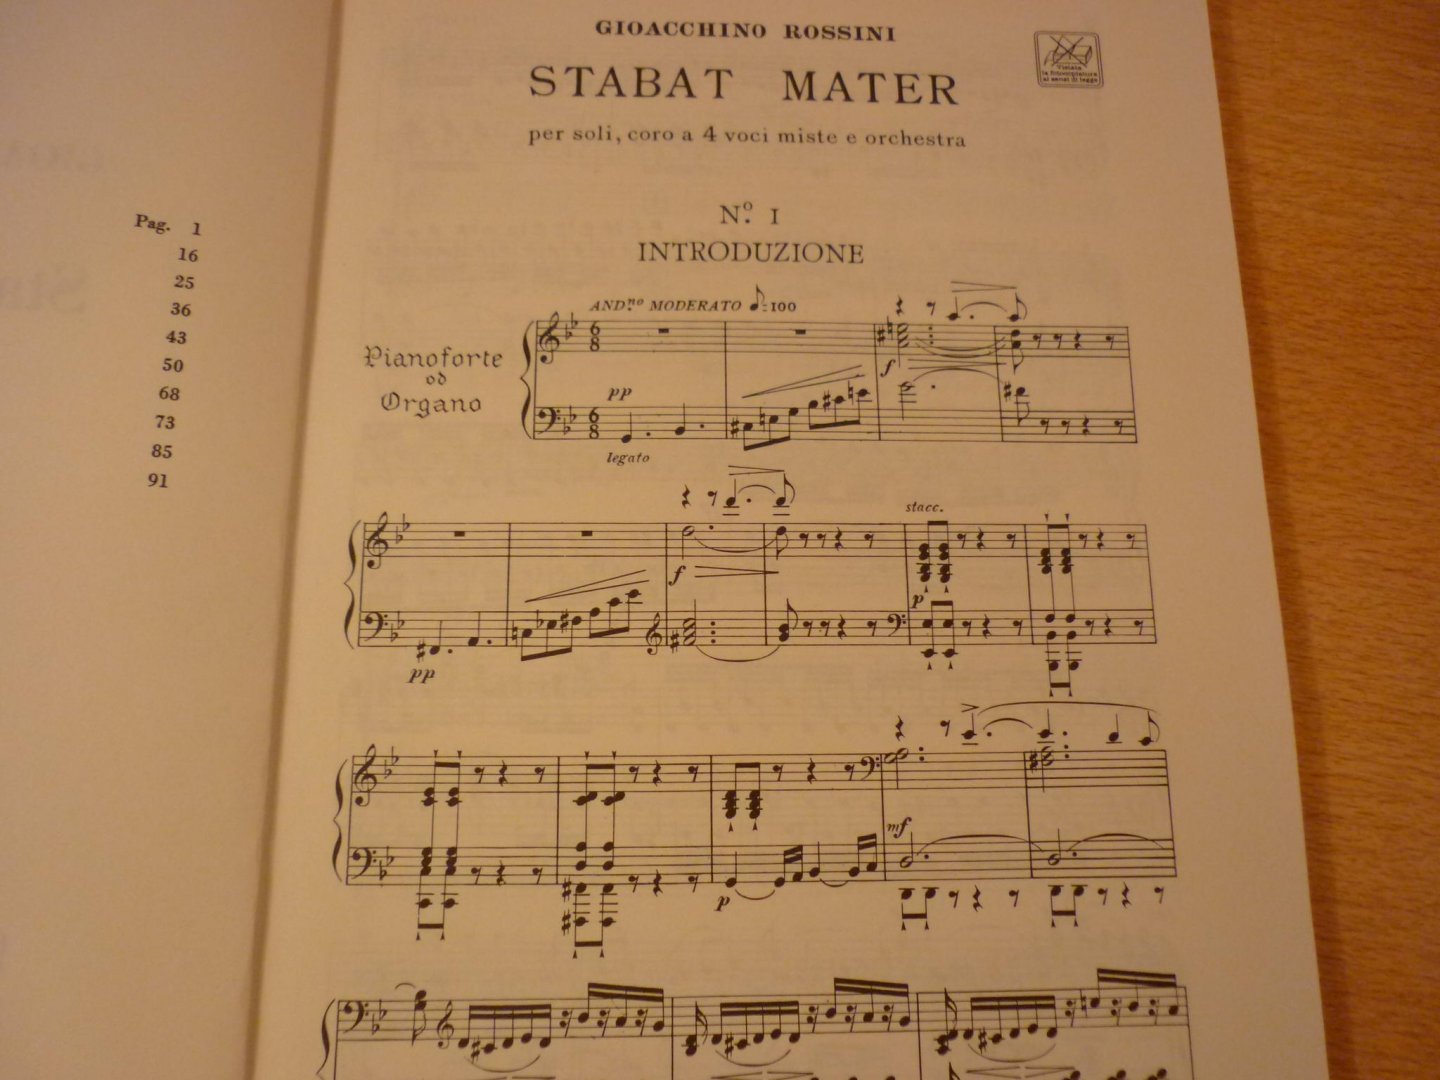 Rossini; Gioachino (1792–1868) - Stabat Mater, Per soli, coro a 4 voci miste e orchestra (Ricordi Opera Vocal Score Series)